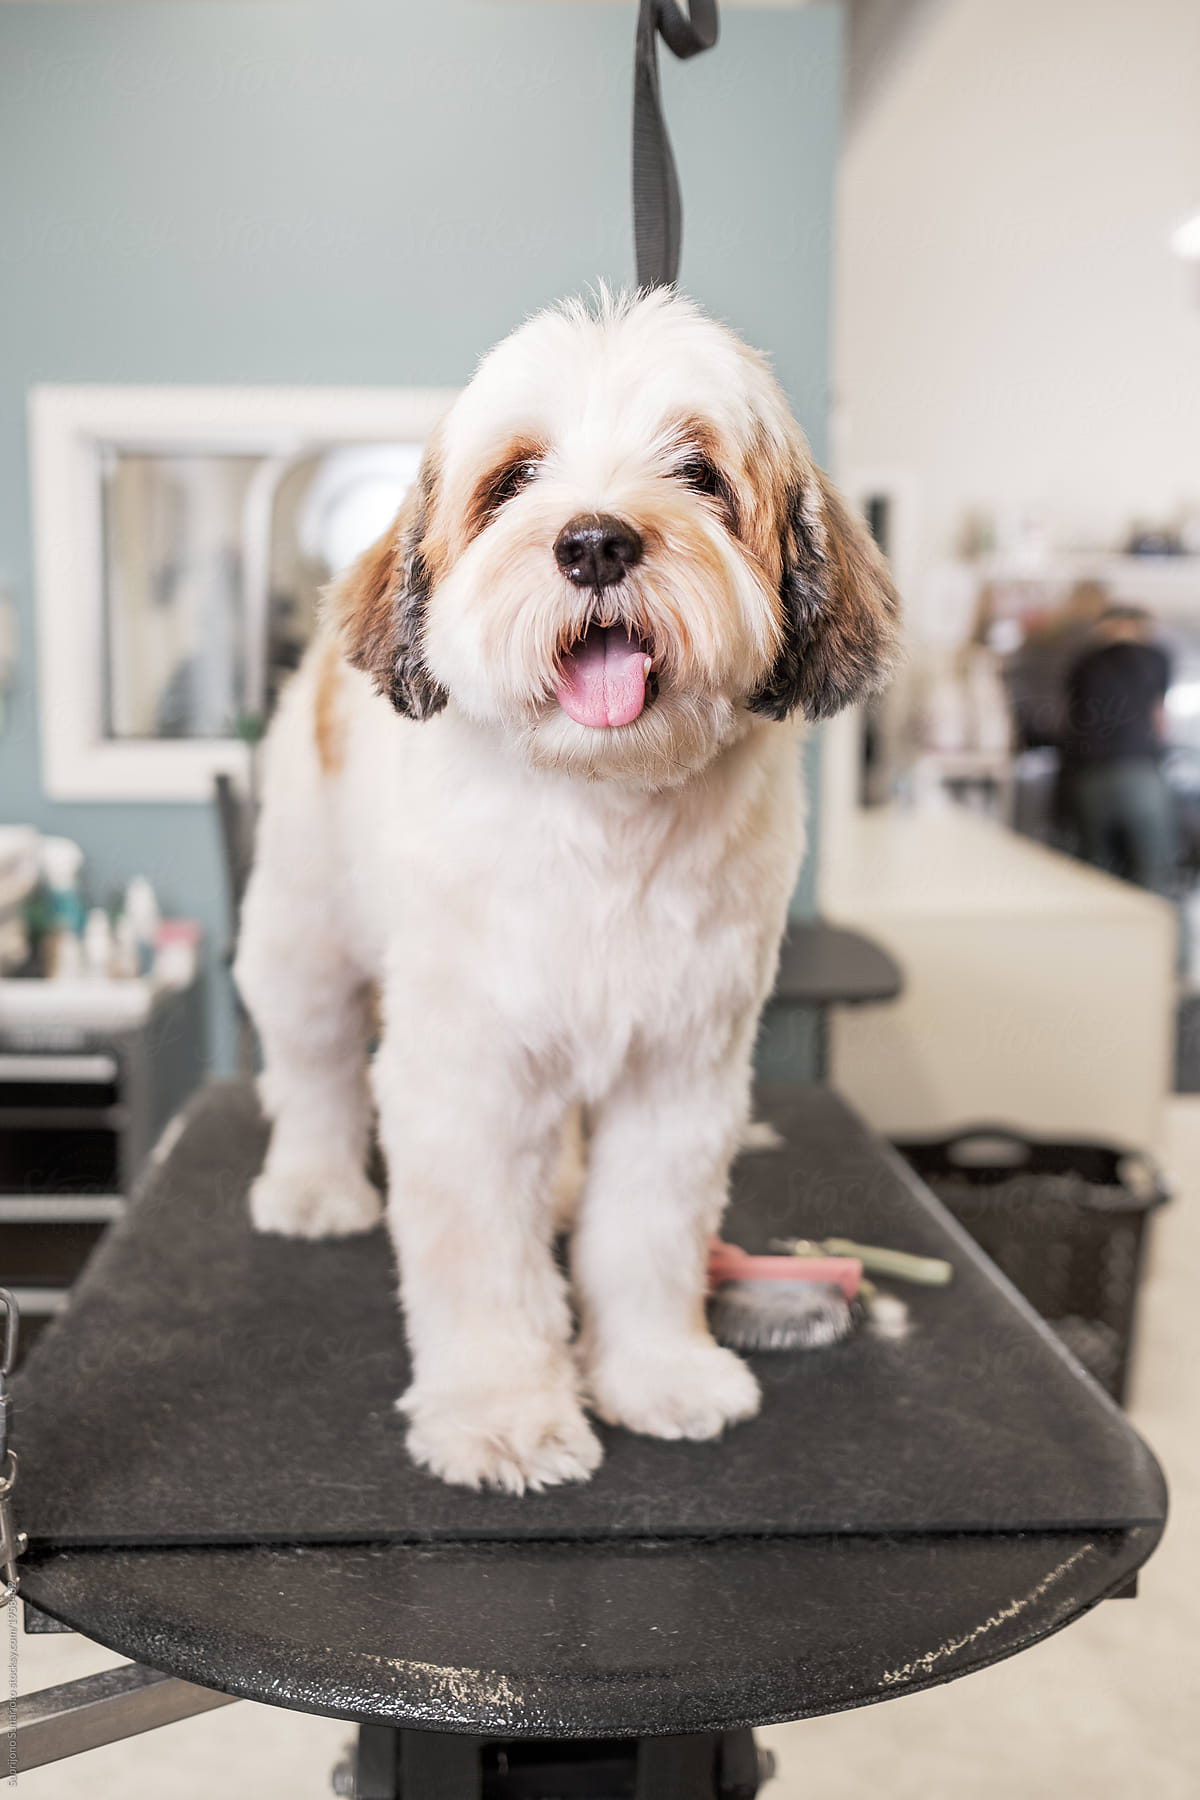 Cute Puppy Waiting for a Haircut at Pet Salon